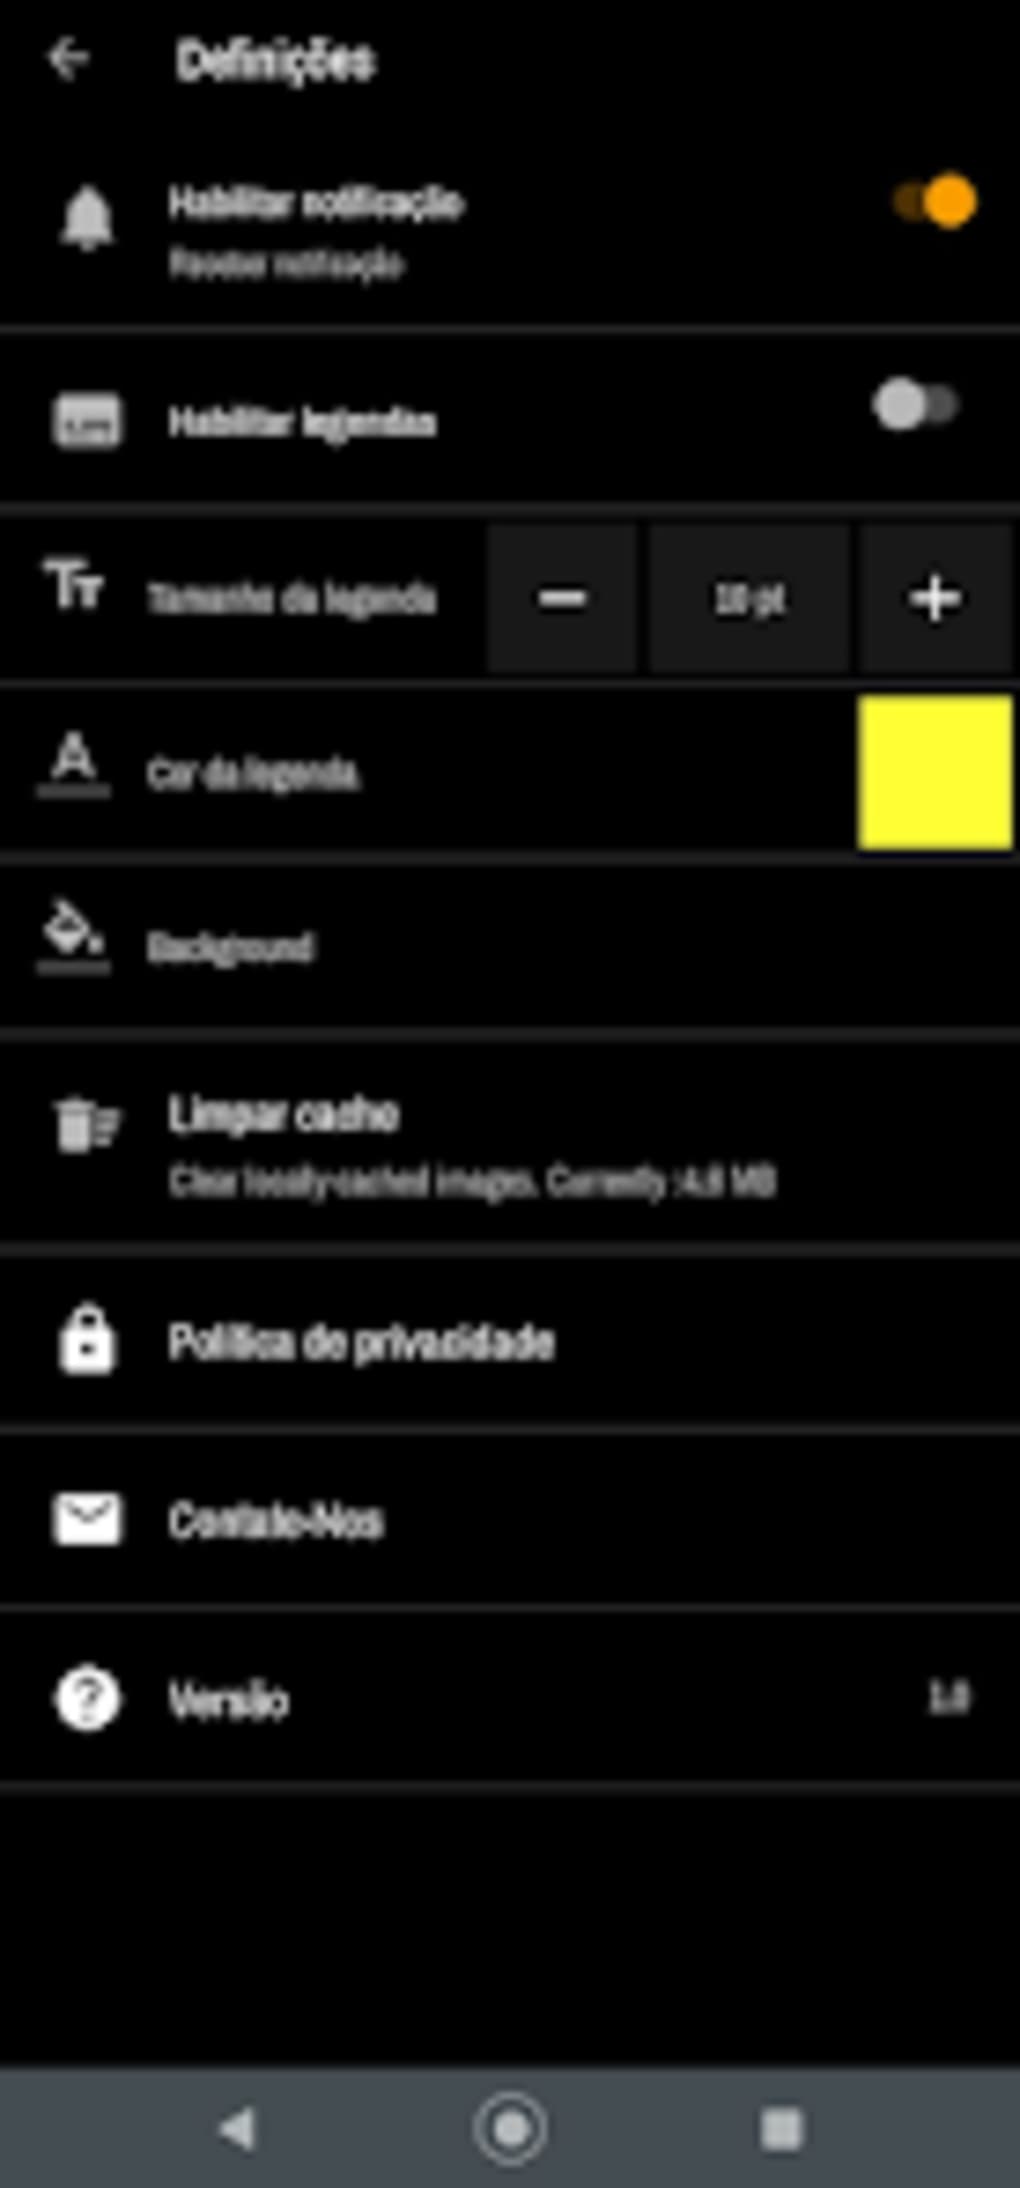 Asiaflix - Ver Doramas para Android - Download